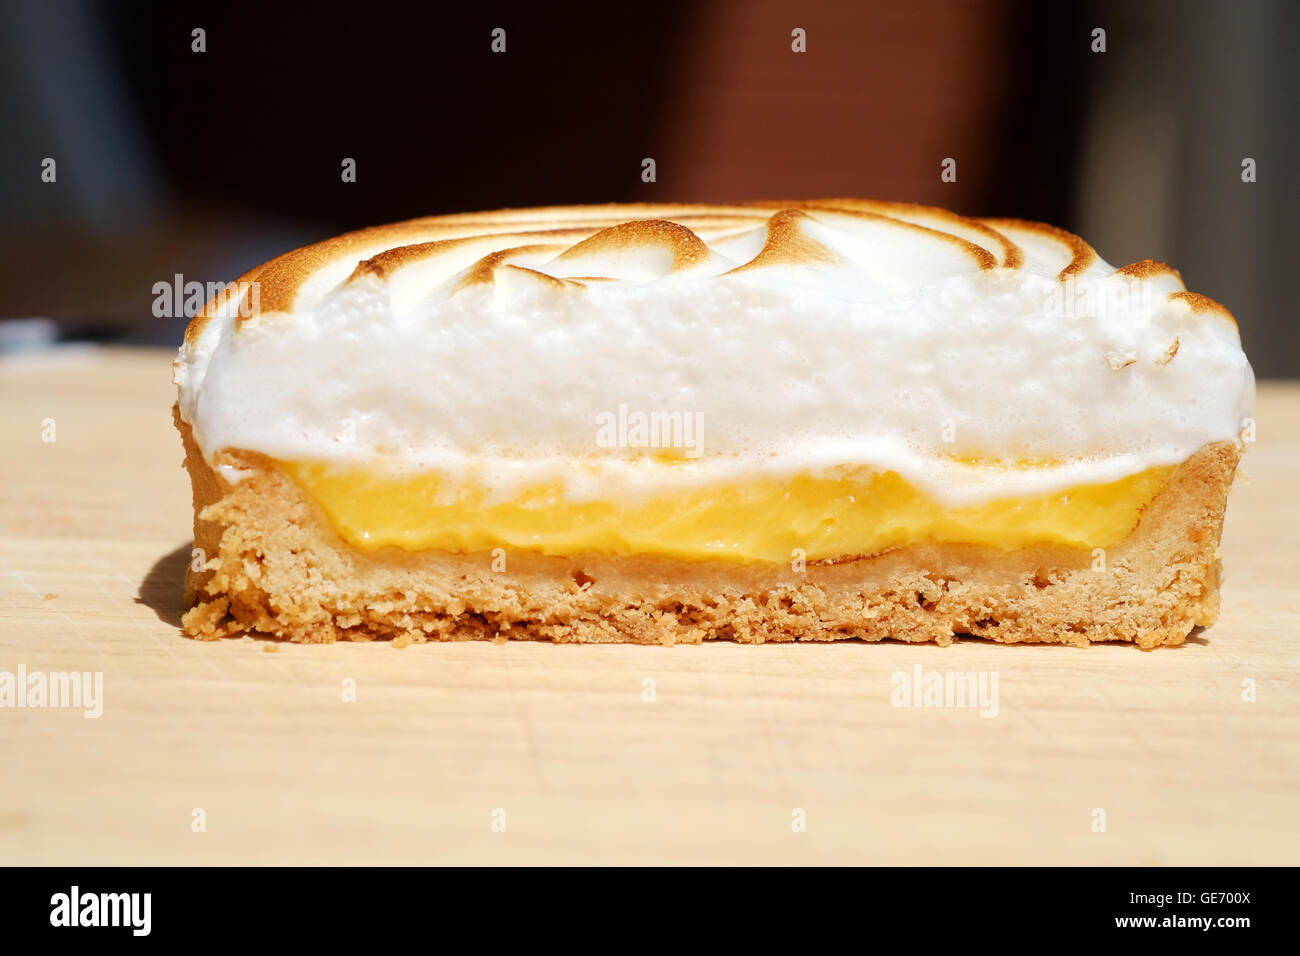 Eine lecker aussehende Zitronen-Baiser-Kuchen Stockfoto